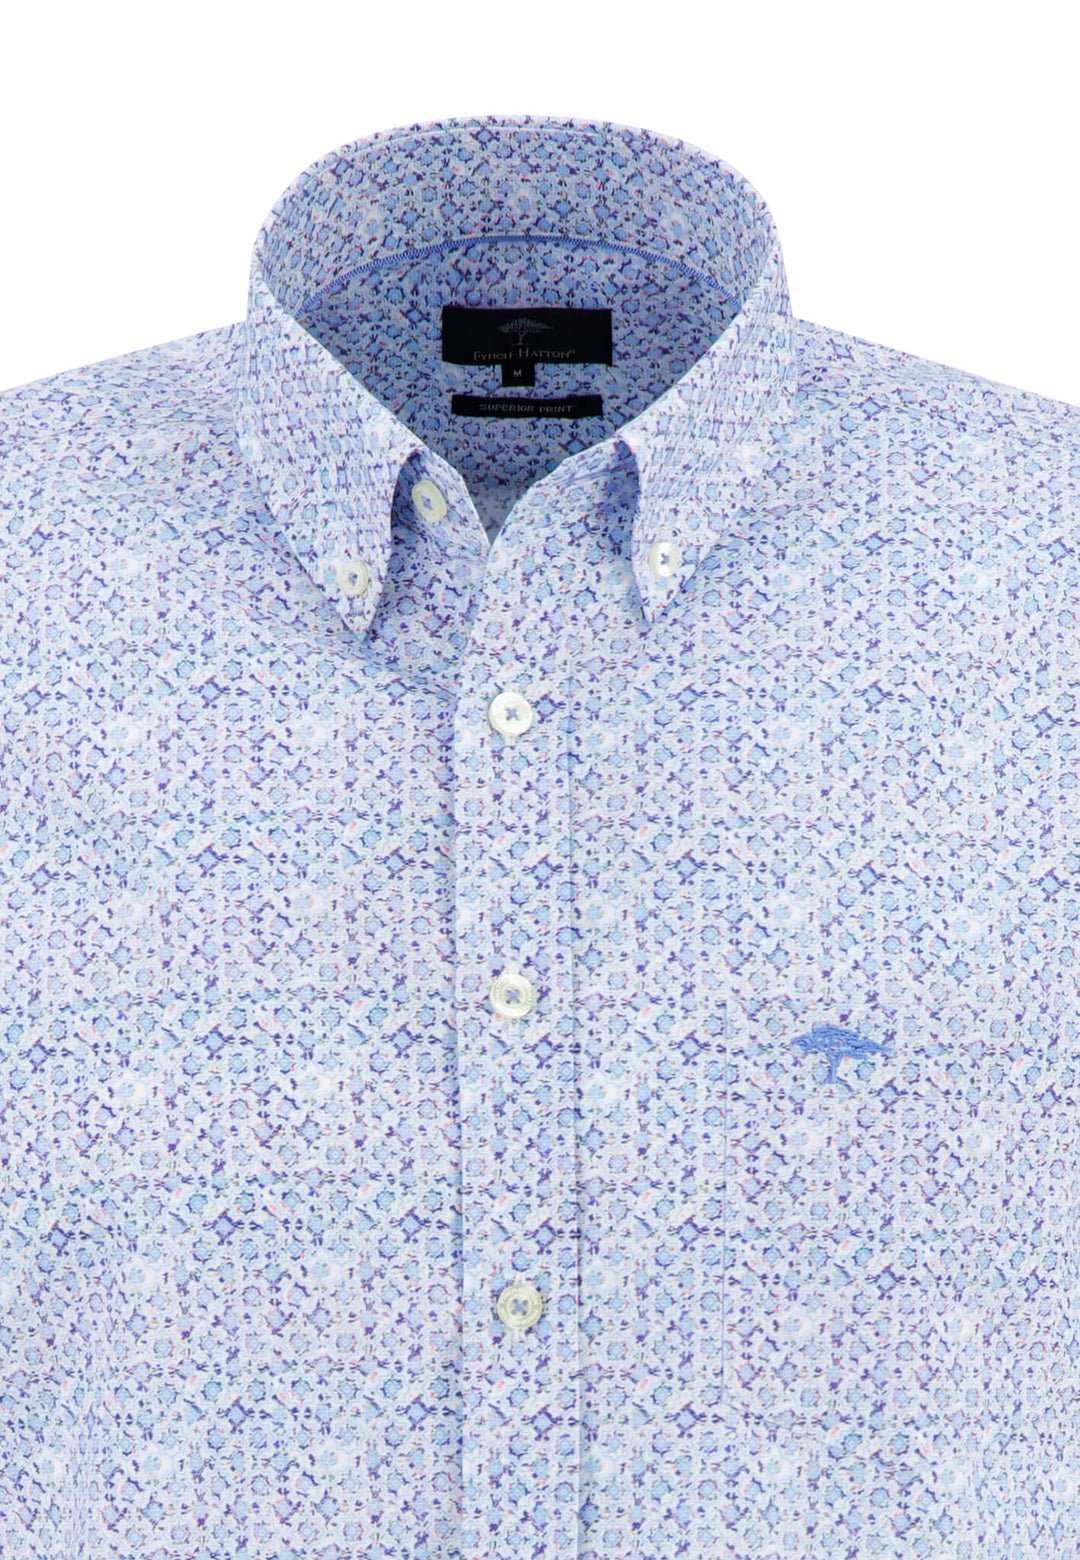 【Empfehlung】 Superior Print Cotton Shirt – Online | Shop FYNCH-HATTON Offizieller